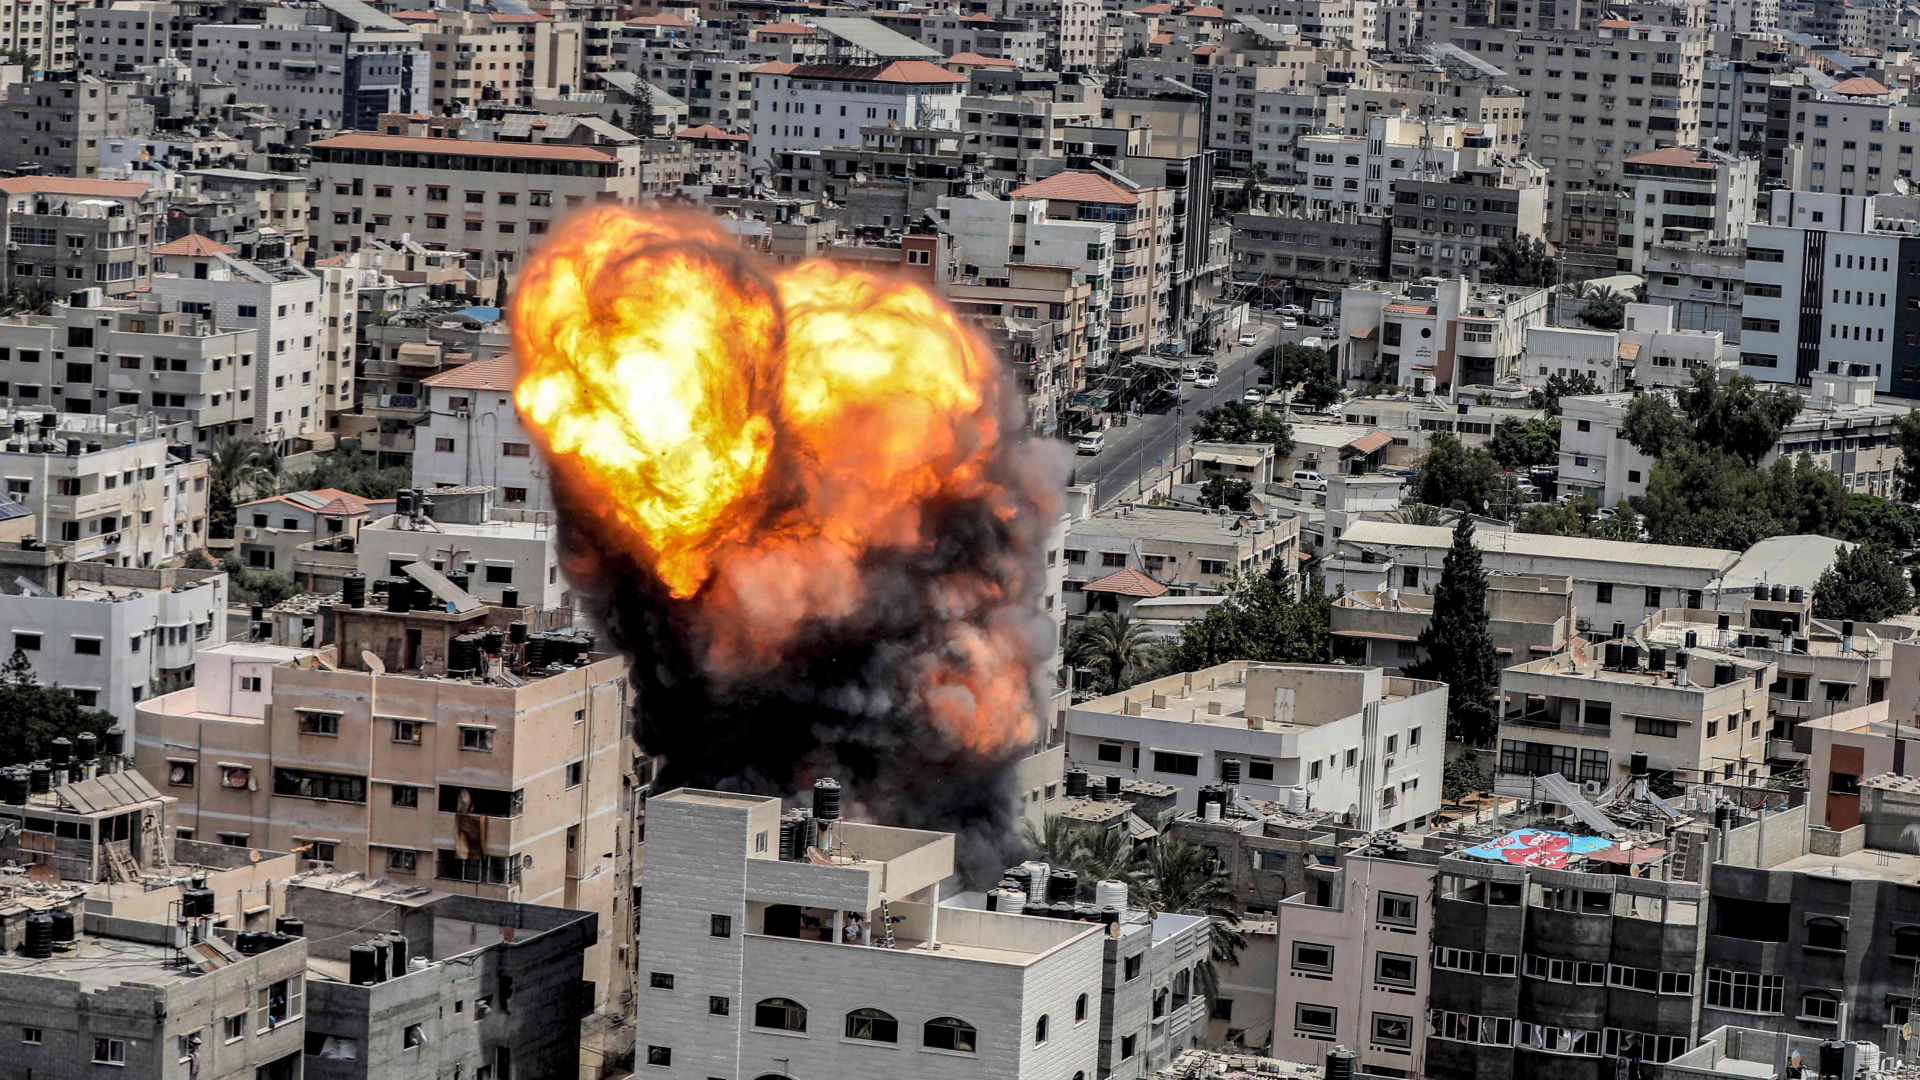 Nach einem israelischen Luftangriff ist ein Feuerball über der Stadt Gaza zu sehen. | AFP